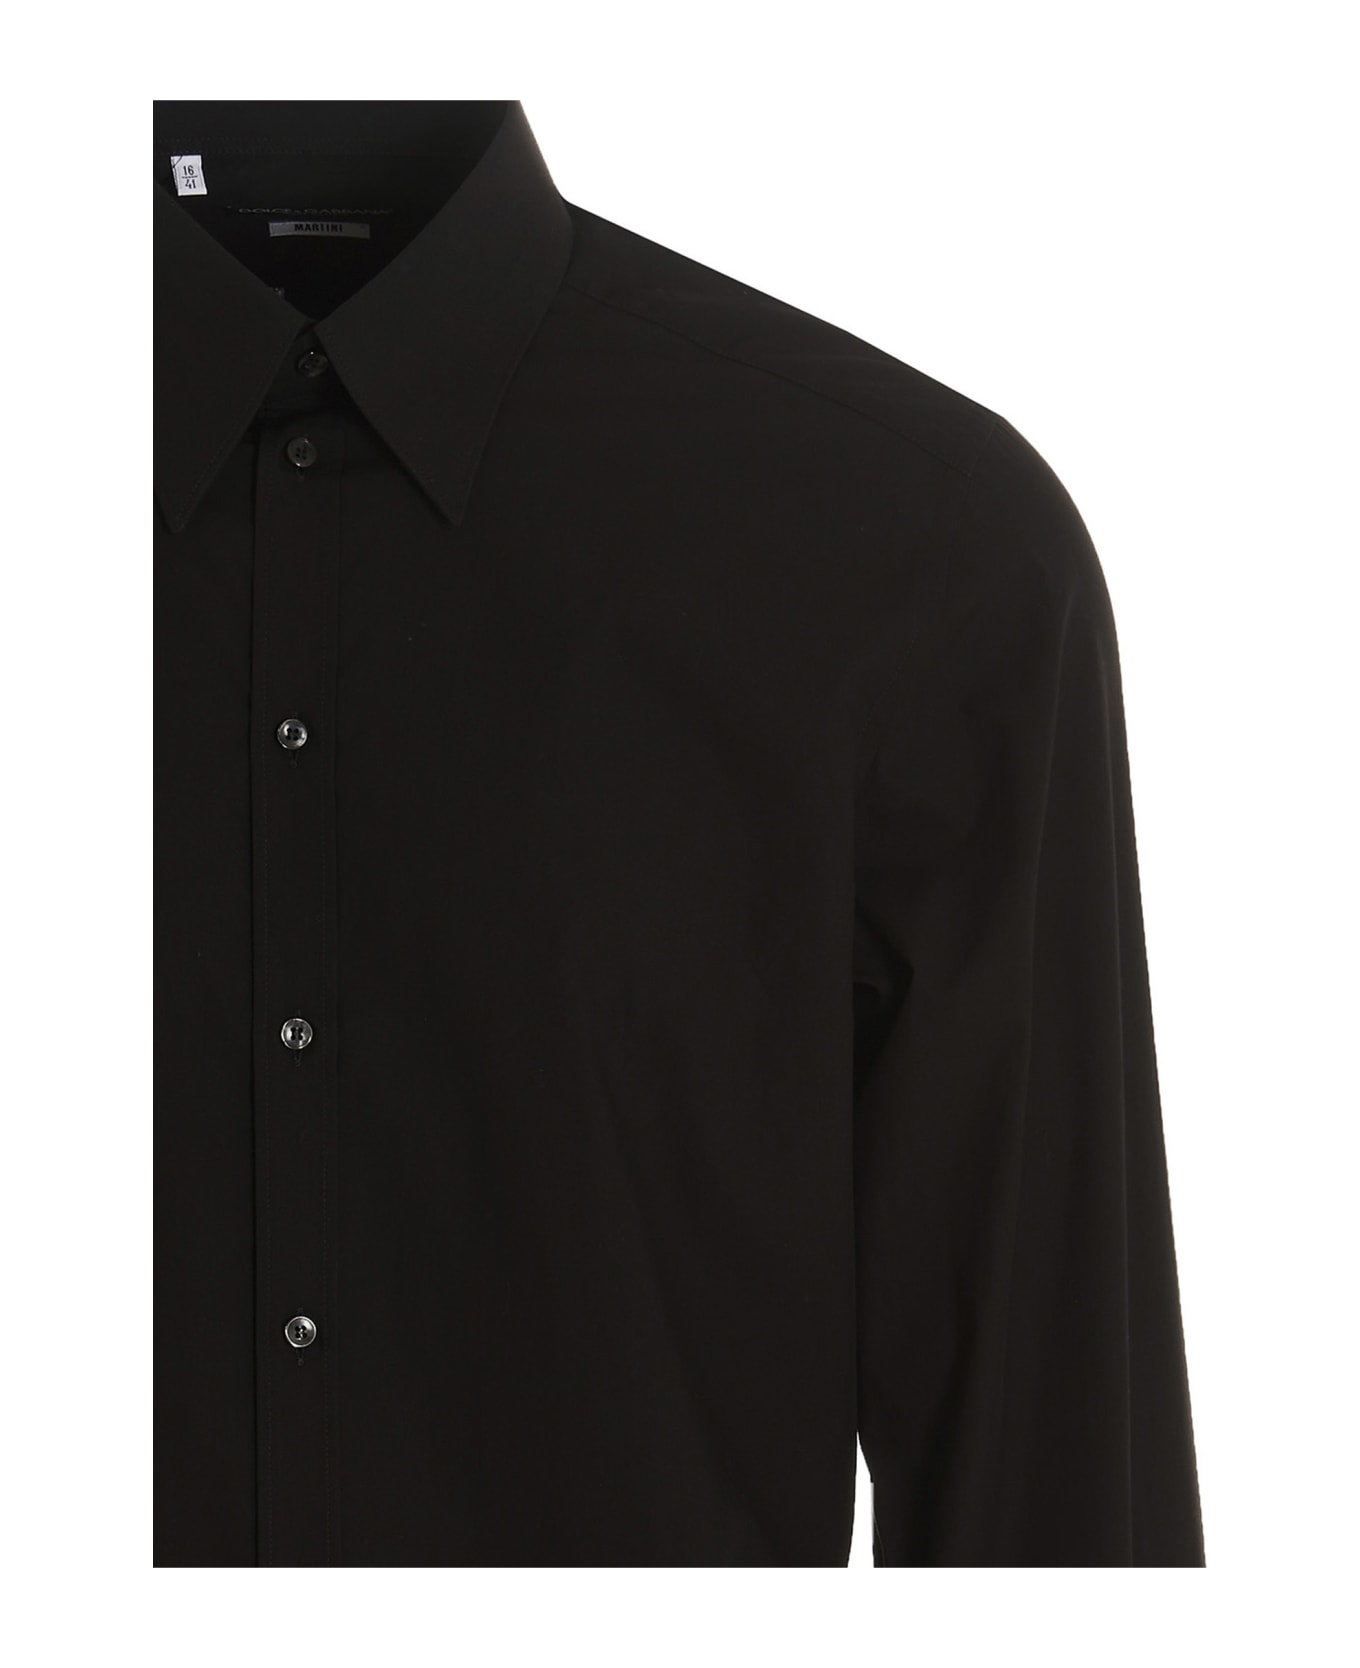 Dolce & Gabbana Poplin Shirt - Black